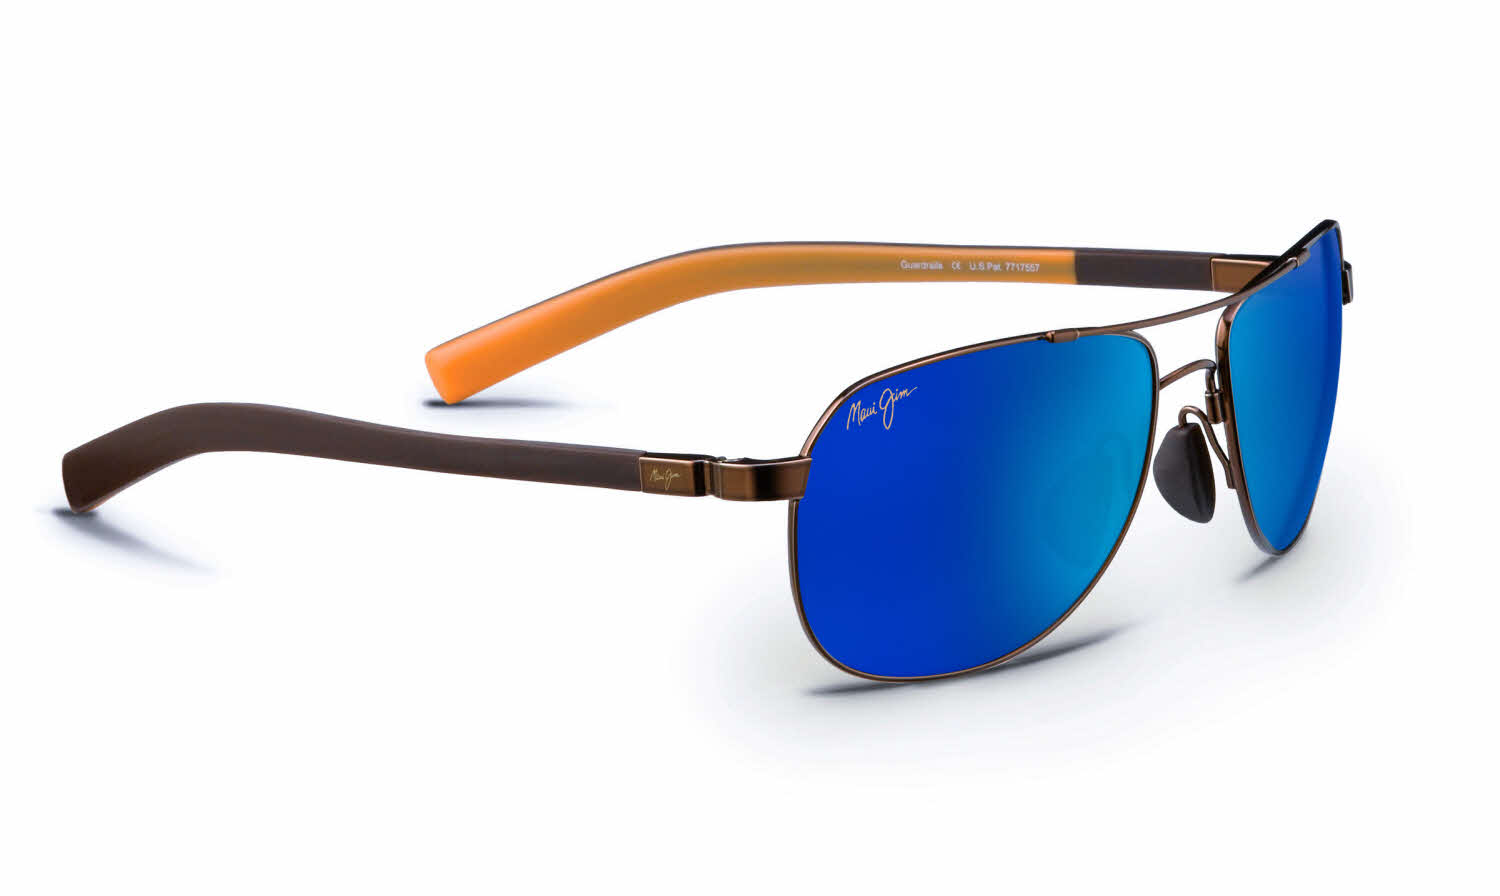 Maui Jim Guardrails-327 Prescription Sunglasses In Brown